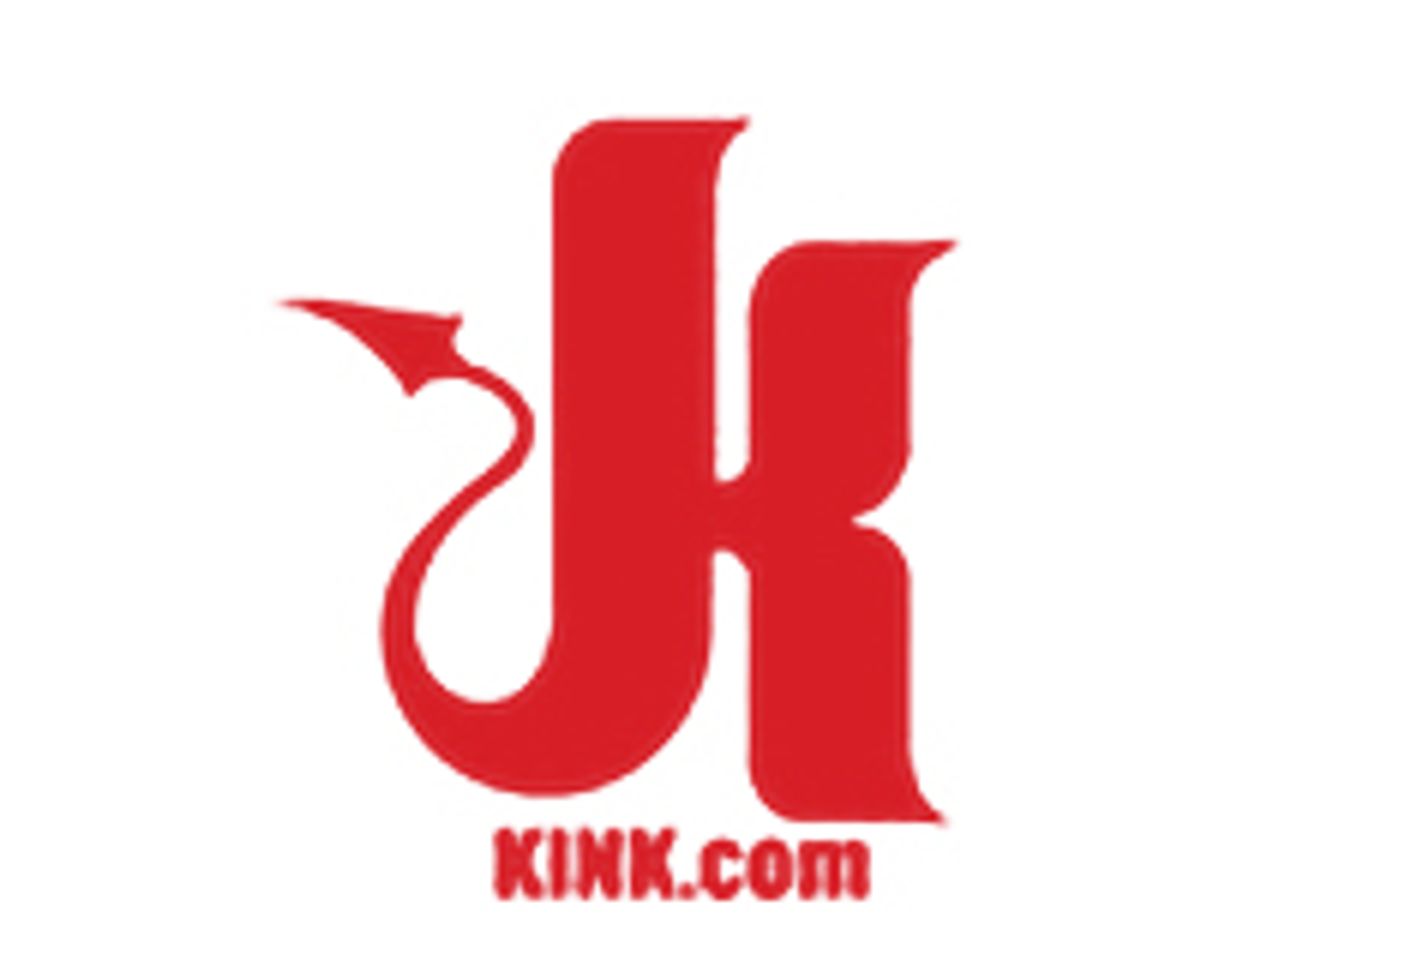 Kink Comes Alive at KinkLive.com